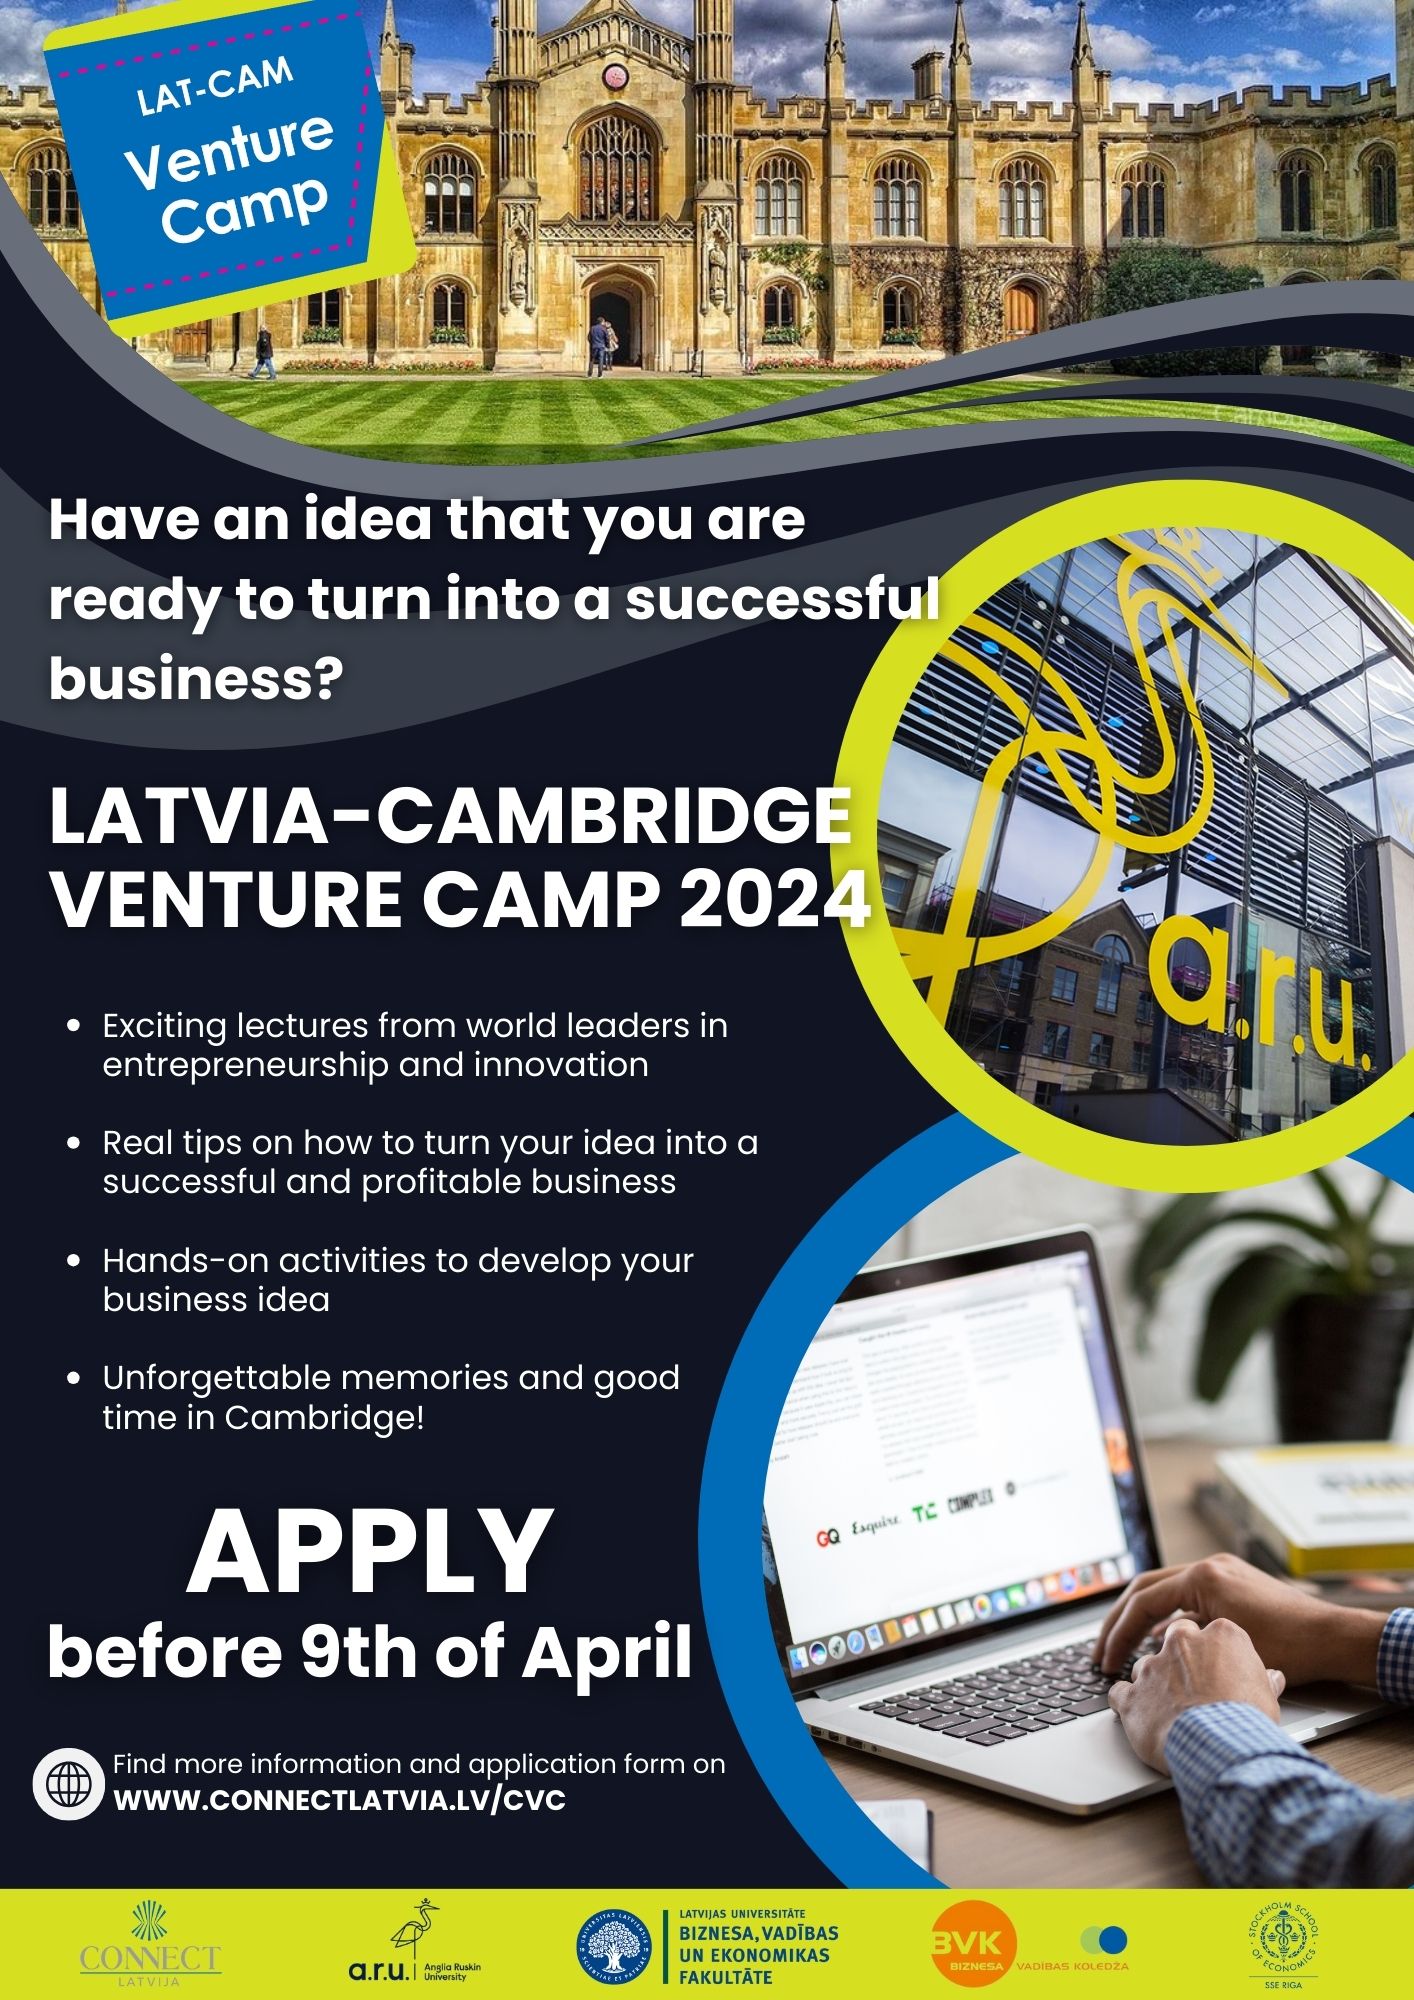 Latvia-Cambridge Venture Camp 2024